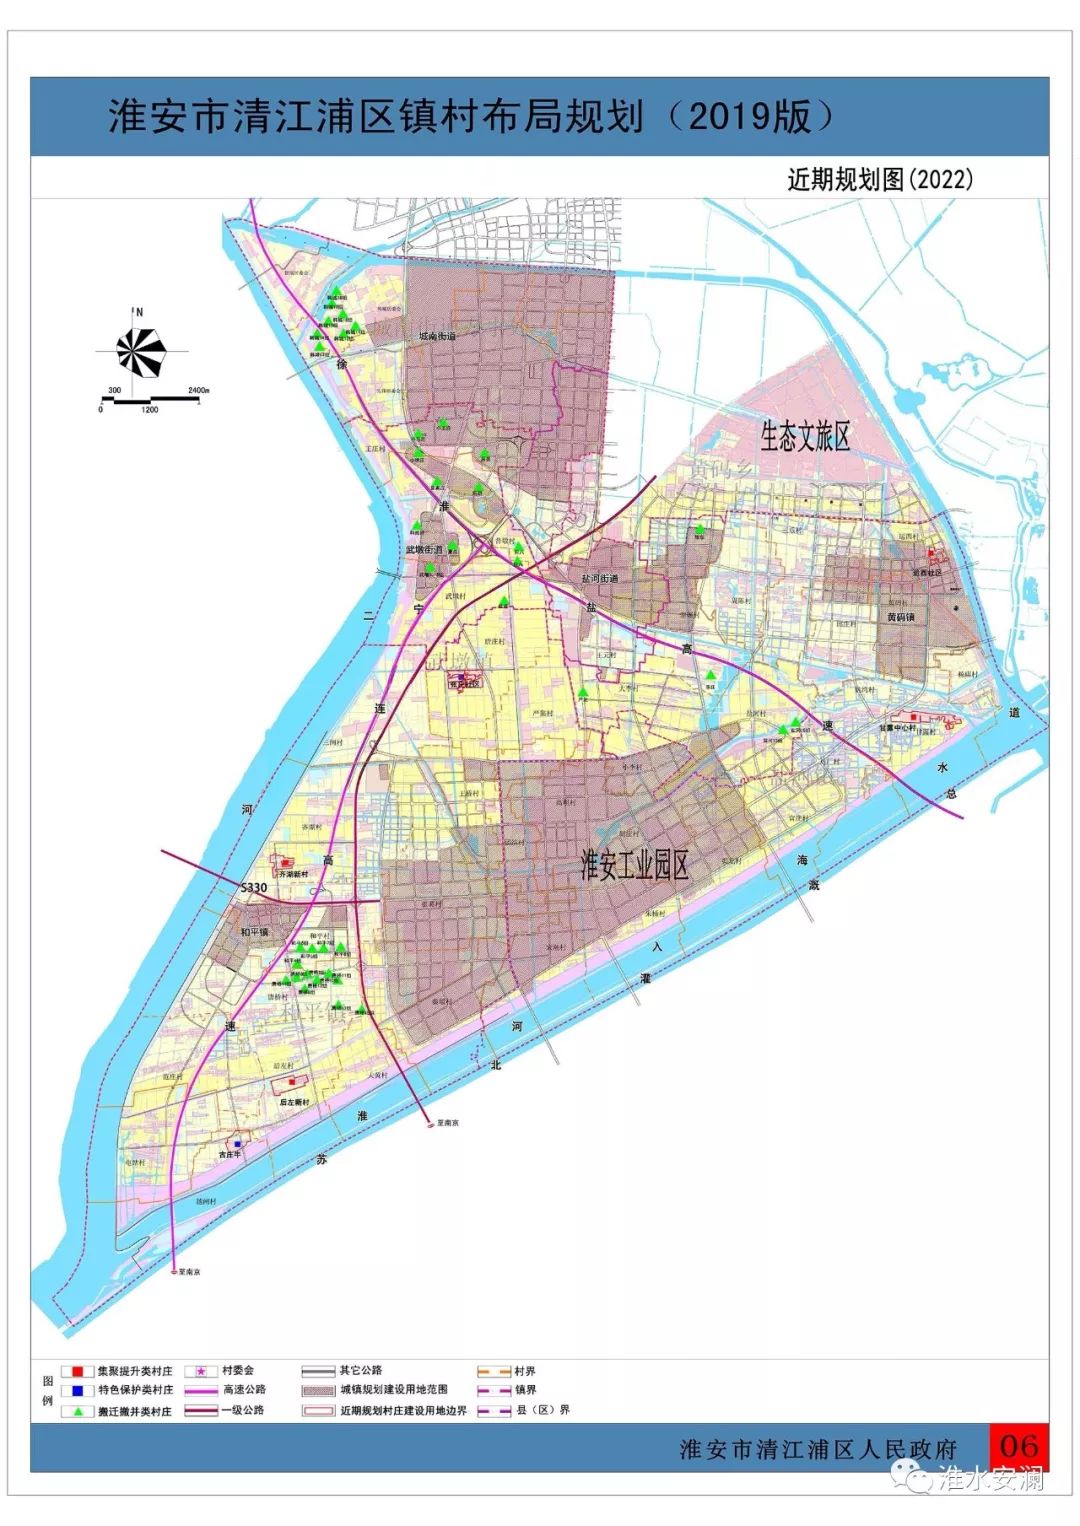 67最新清江浦区淮安区镇村布局规划图来了你家在范围内吗